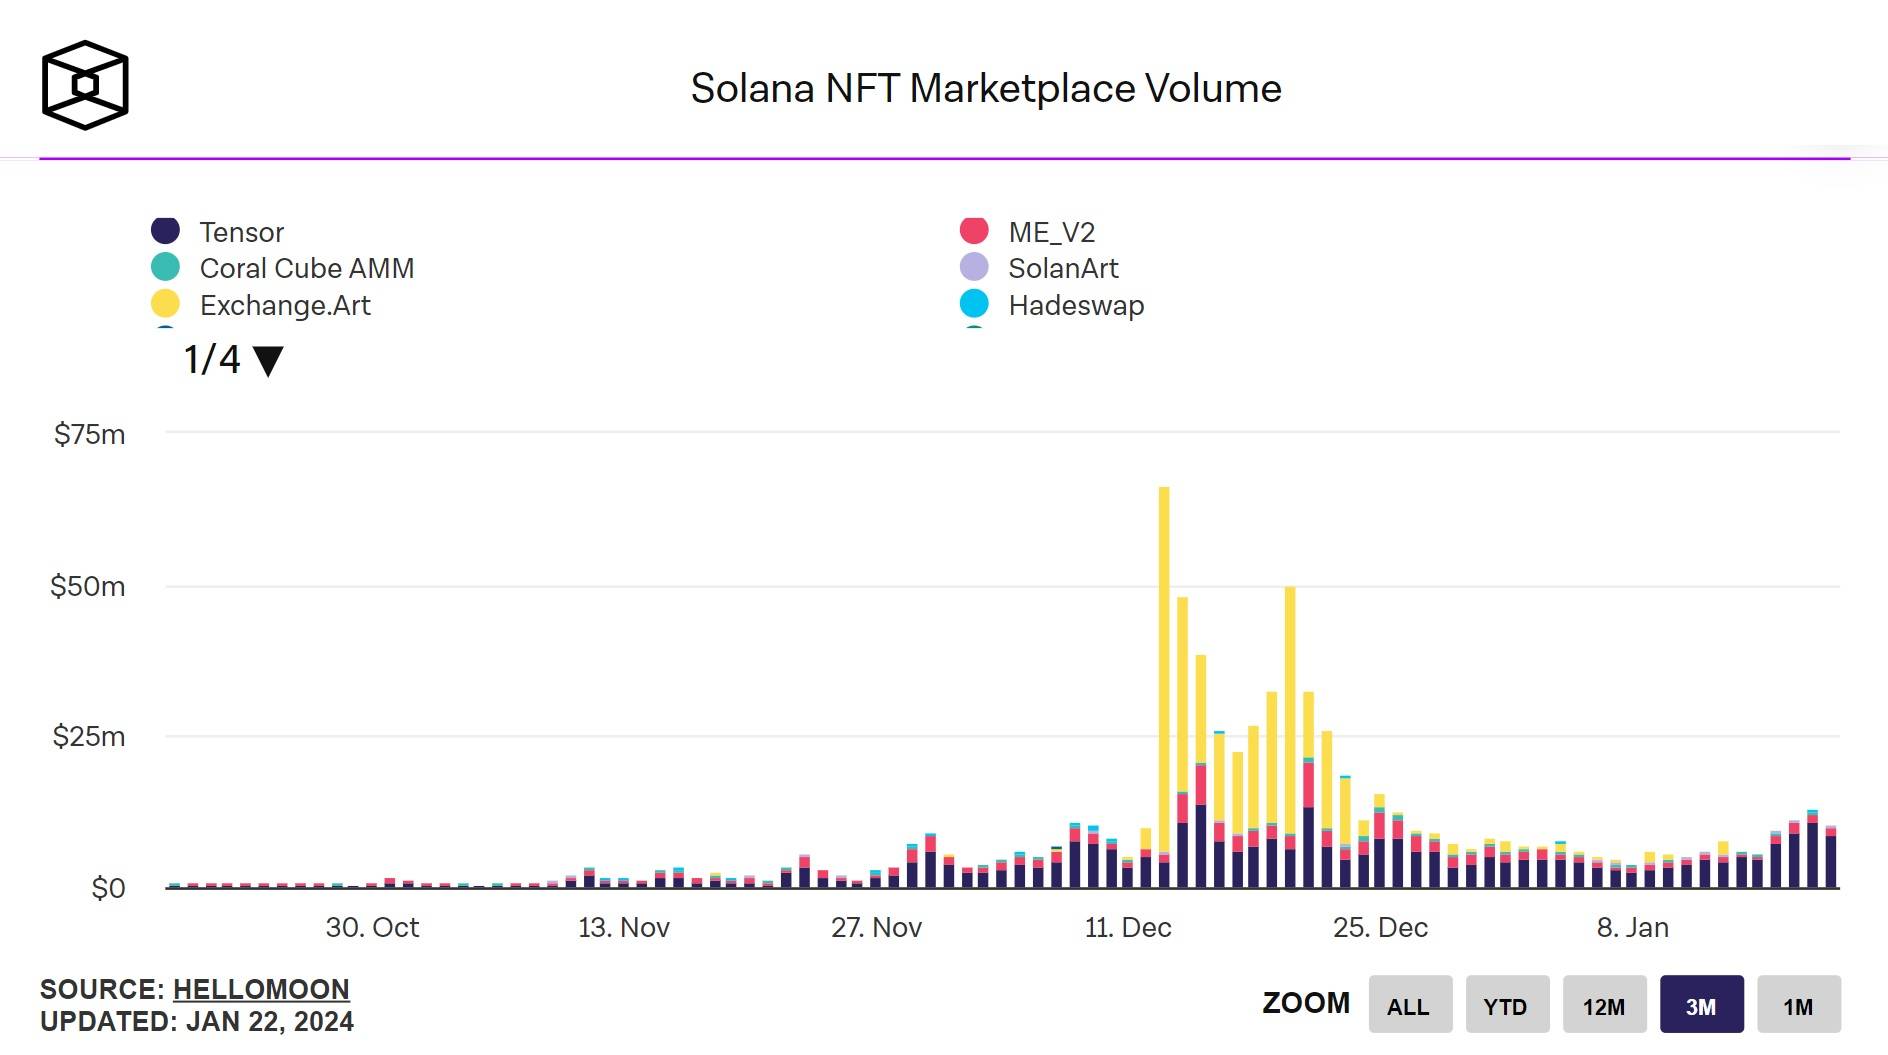 Thống kê khối lượng giao dịch hàng ngày của các sàn NFT trên Solana trong 3 tháng gần nhất. Nguồn: The Block (22/01/2024)